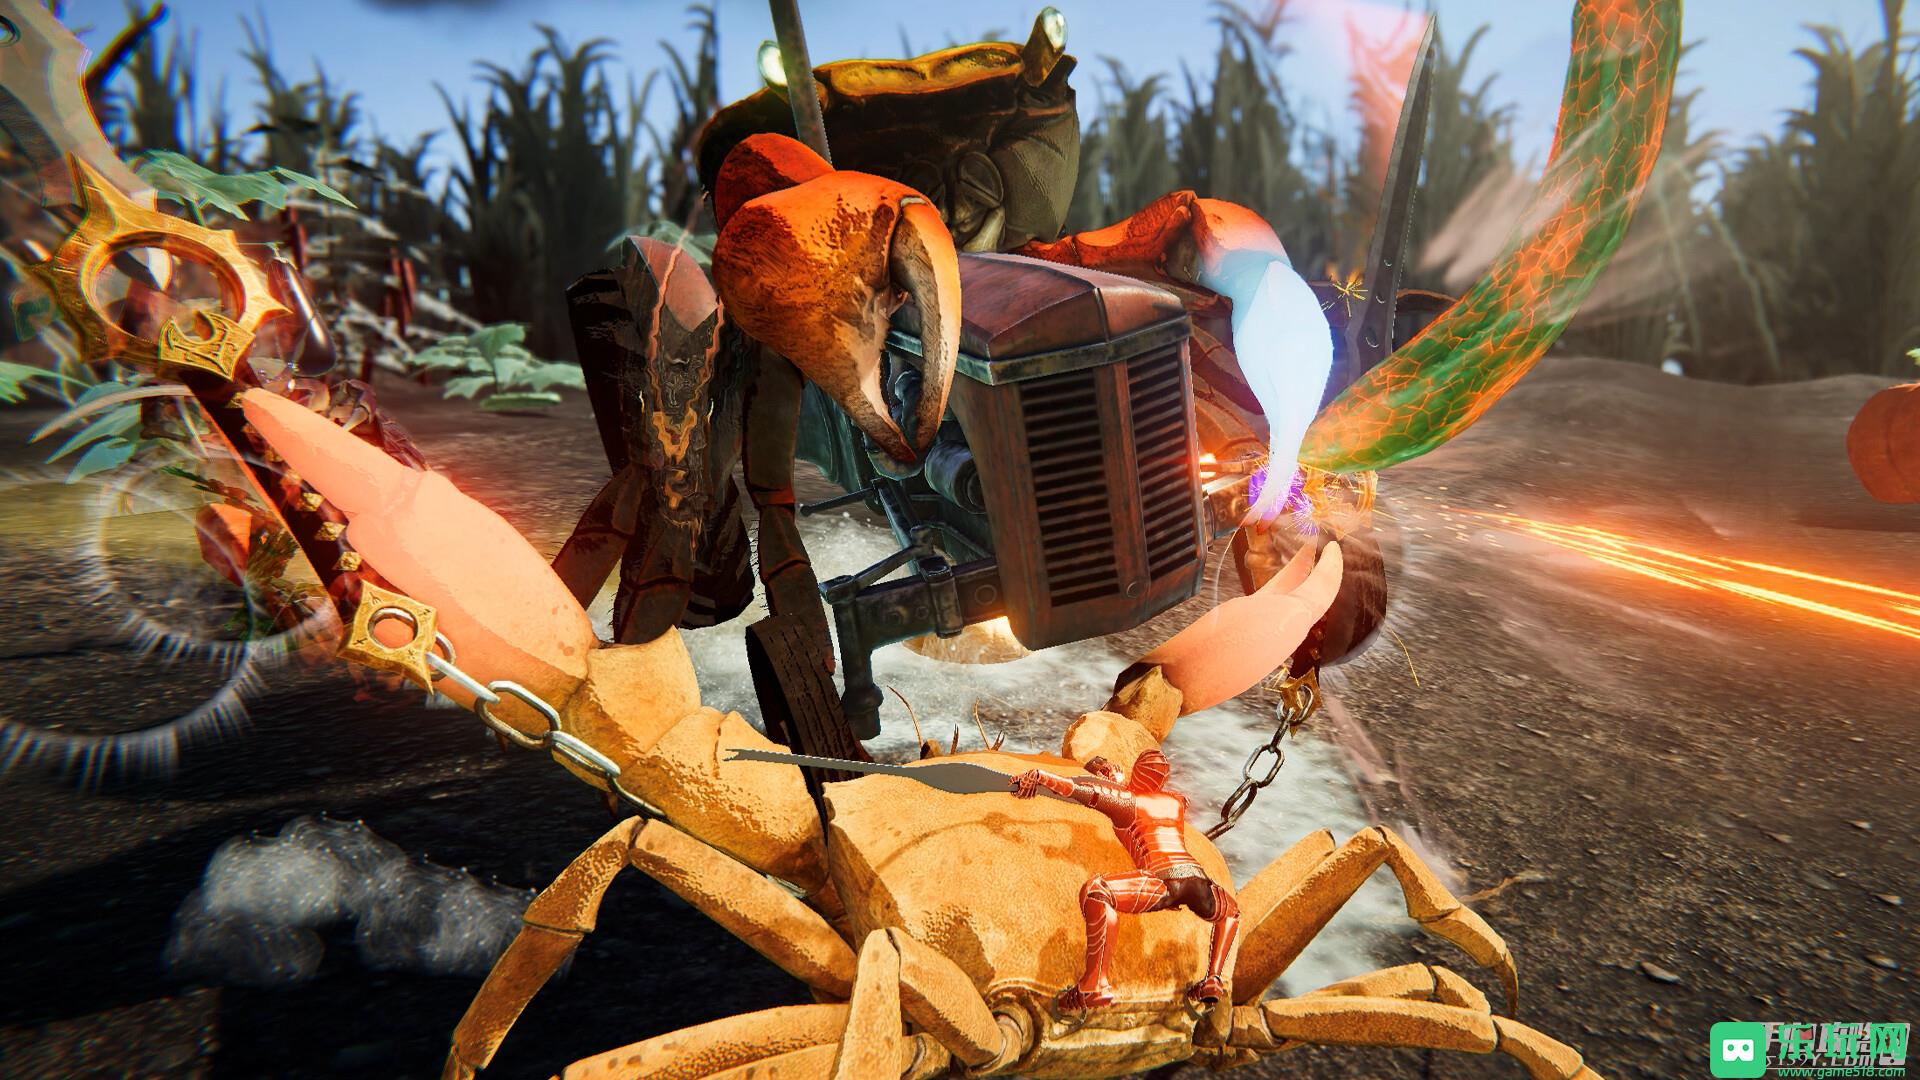 融入各种战略要素的格斗动作游戏《螃蟹大战2》公布